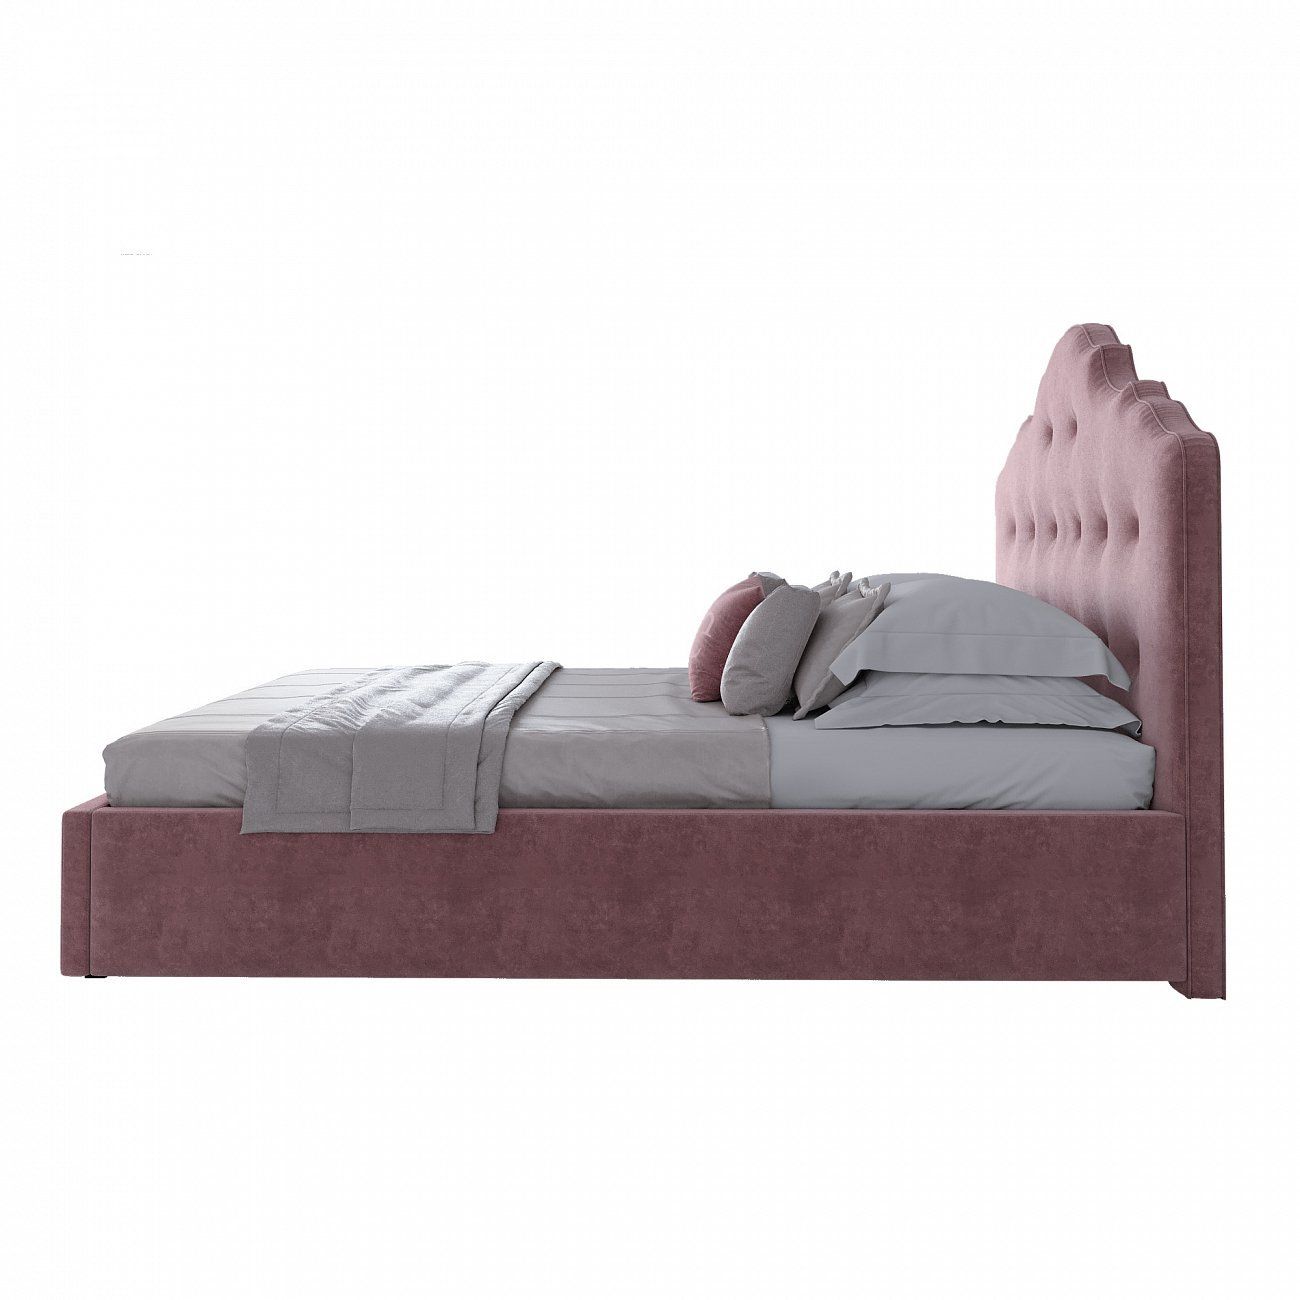 Кровать подростковая с мягким изголовьем 140х200 см пыльная роза Palace